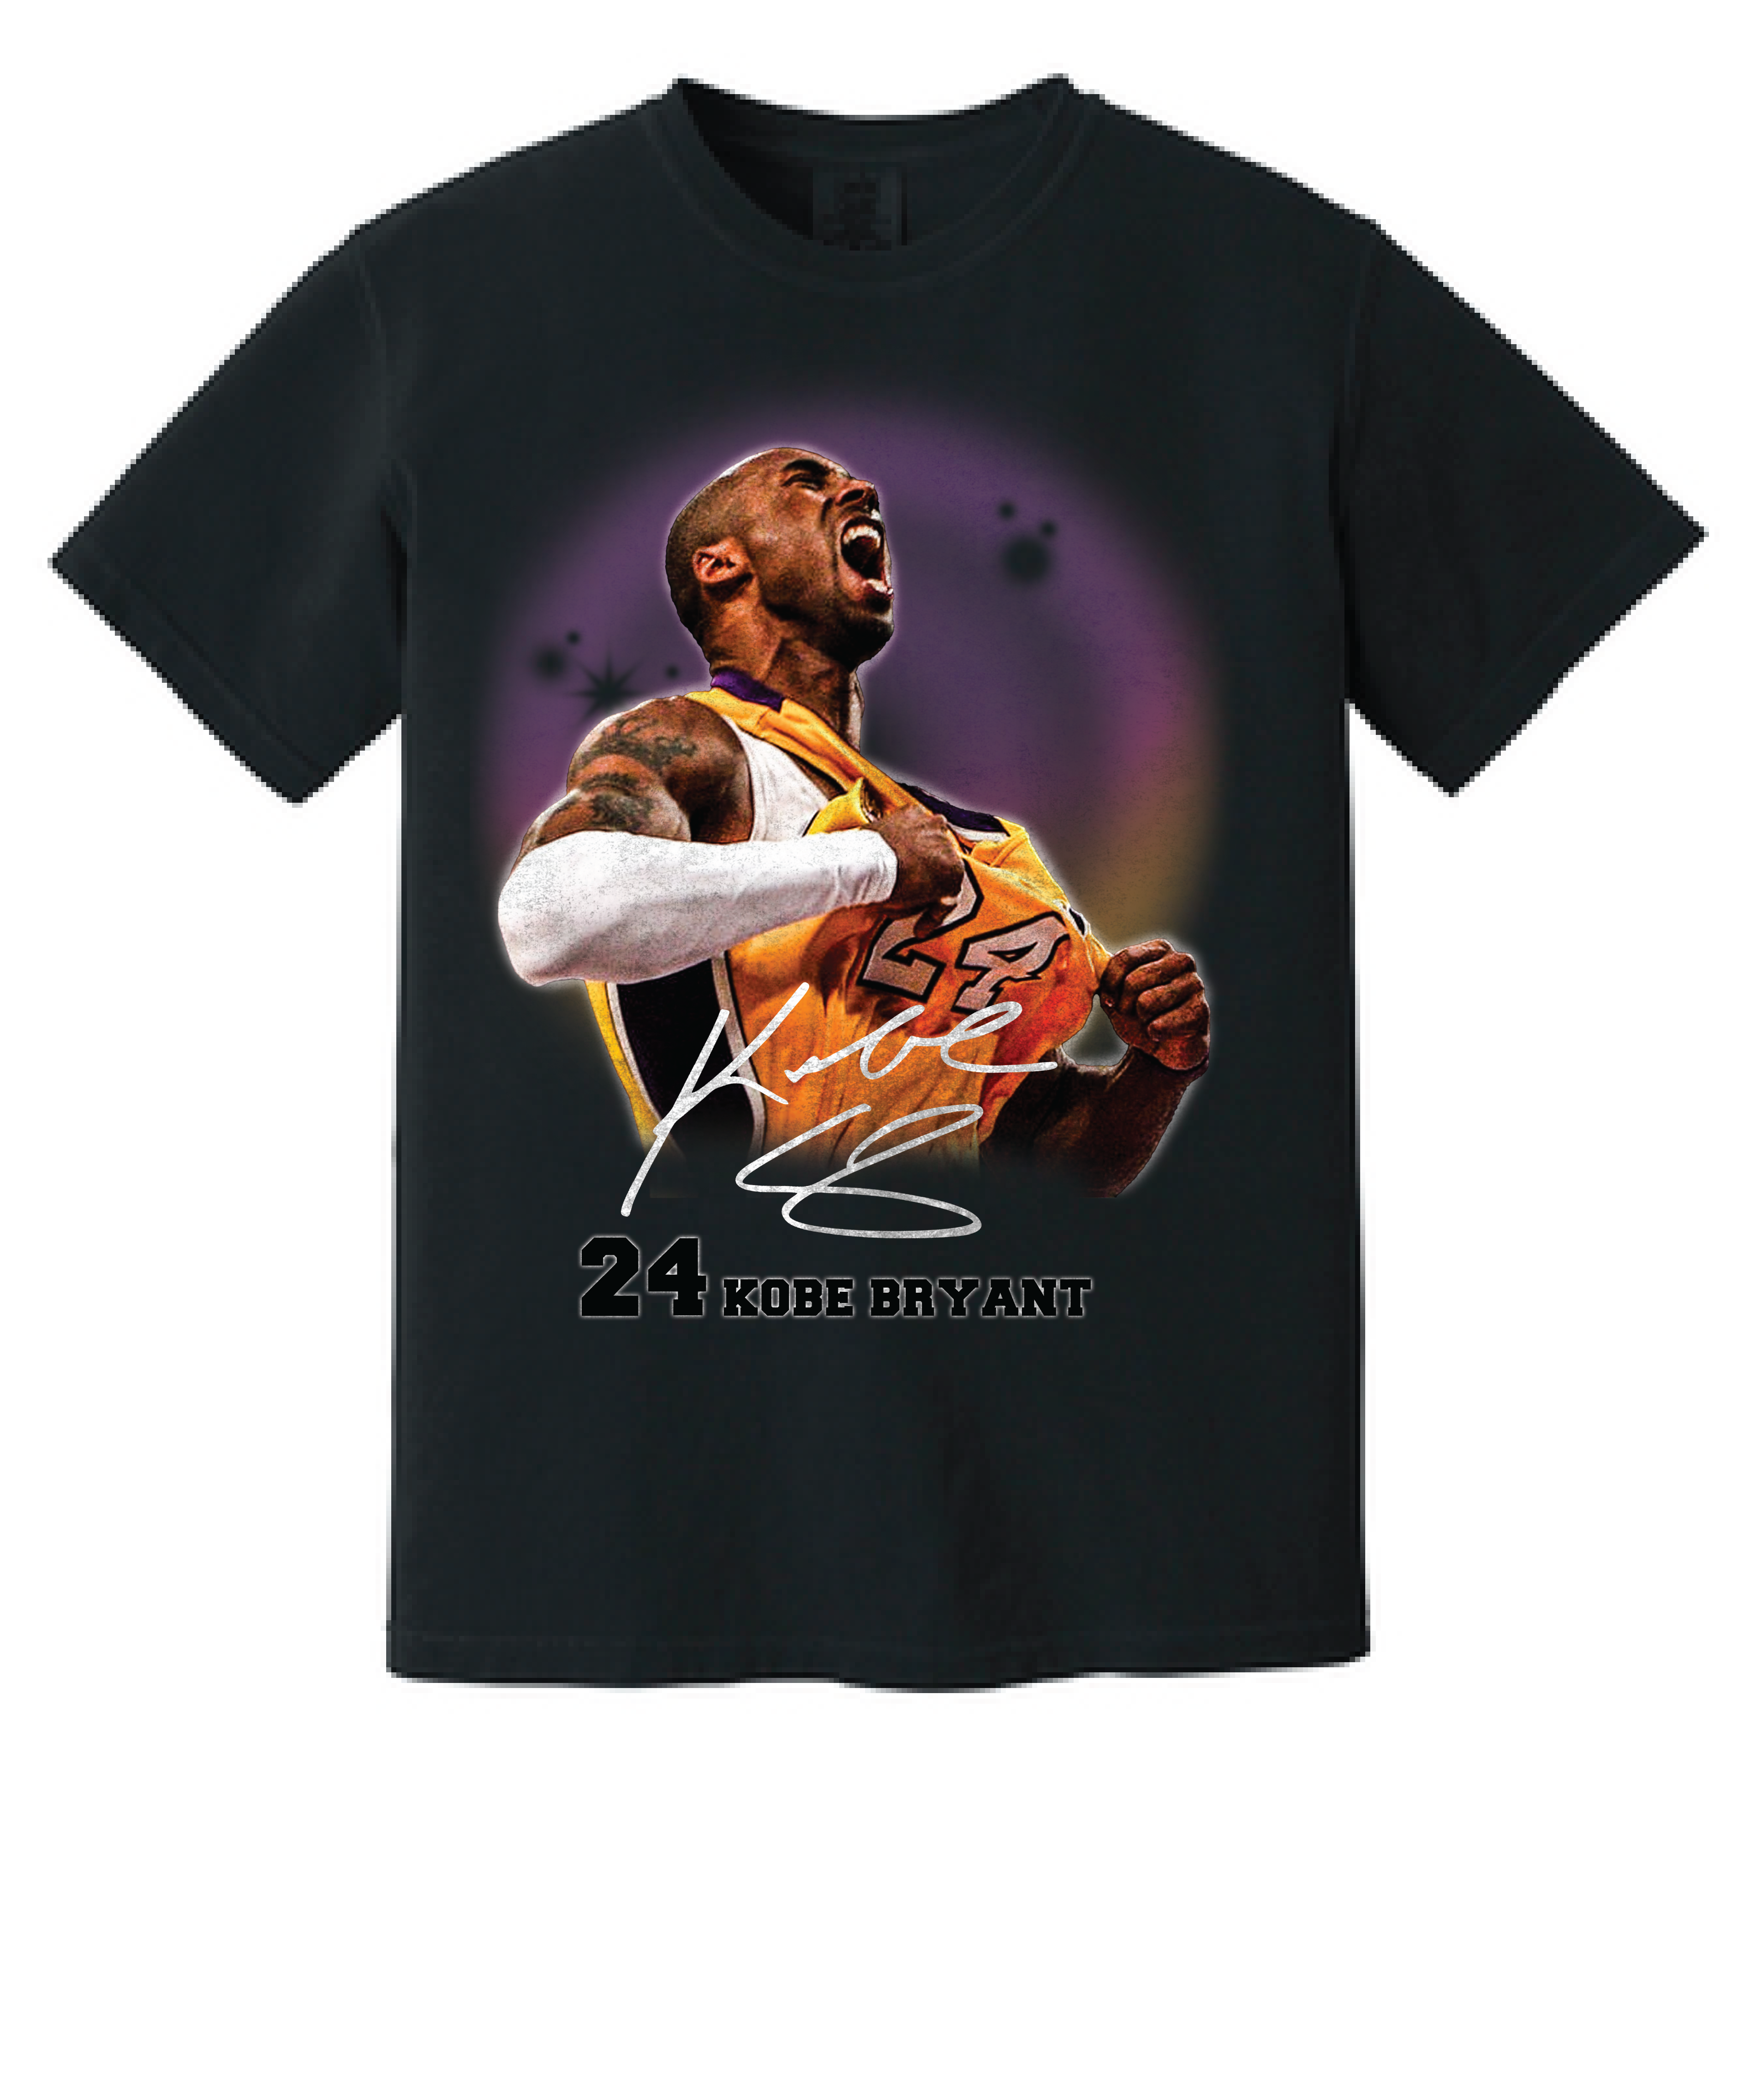 Kobe Bryant vintage Kobe Bryant 2022 Kobe Bryant 90s shirt